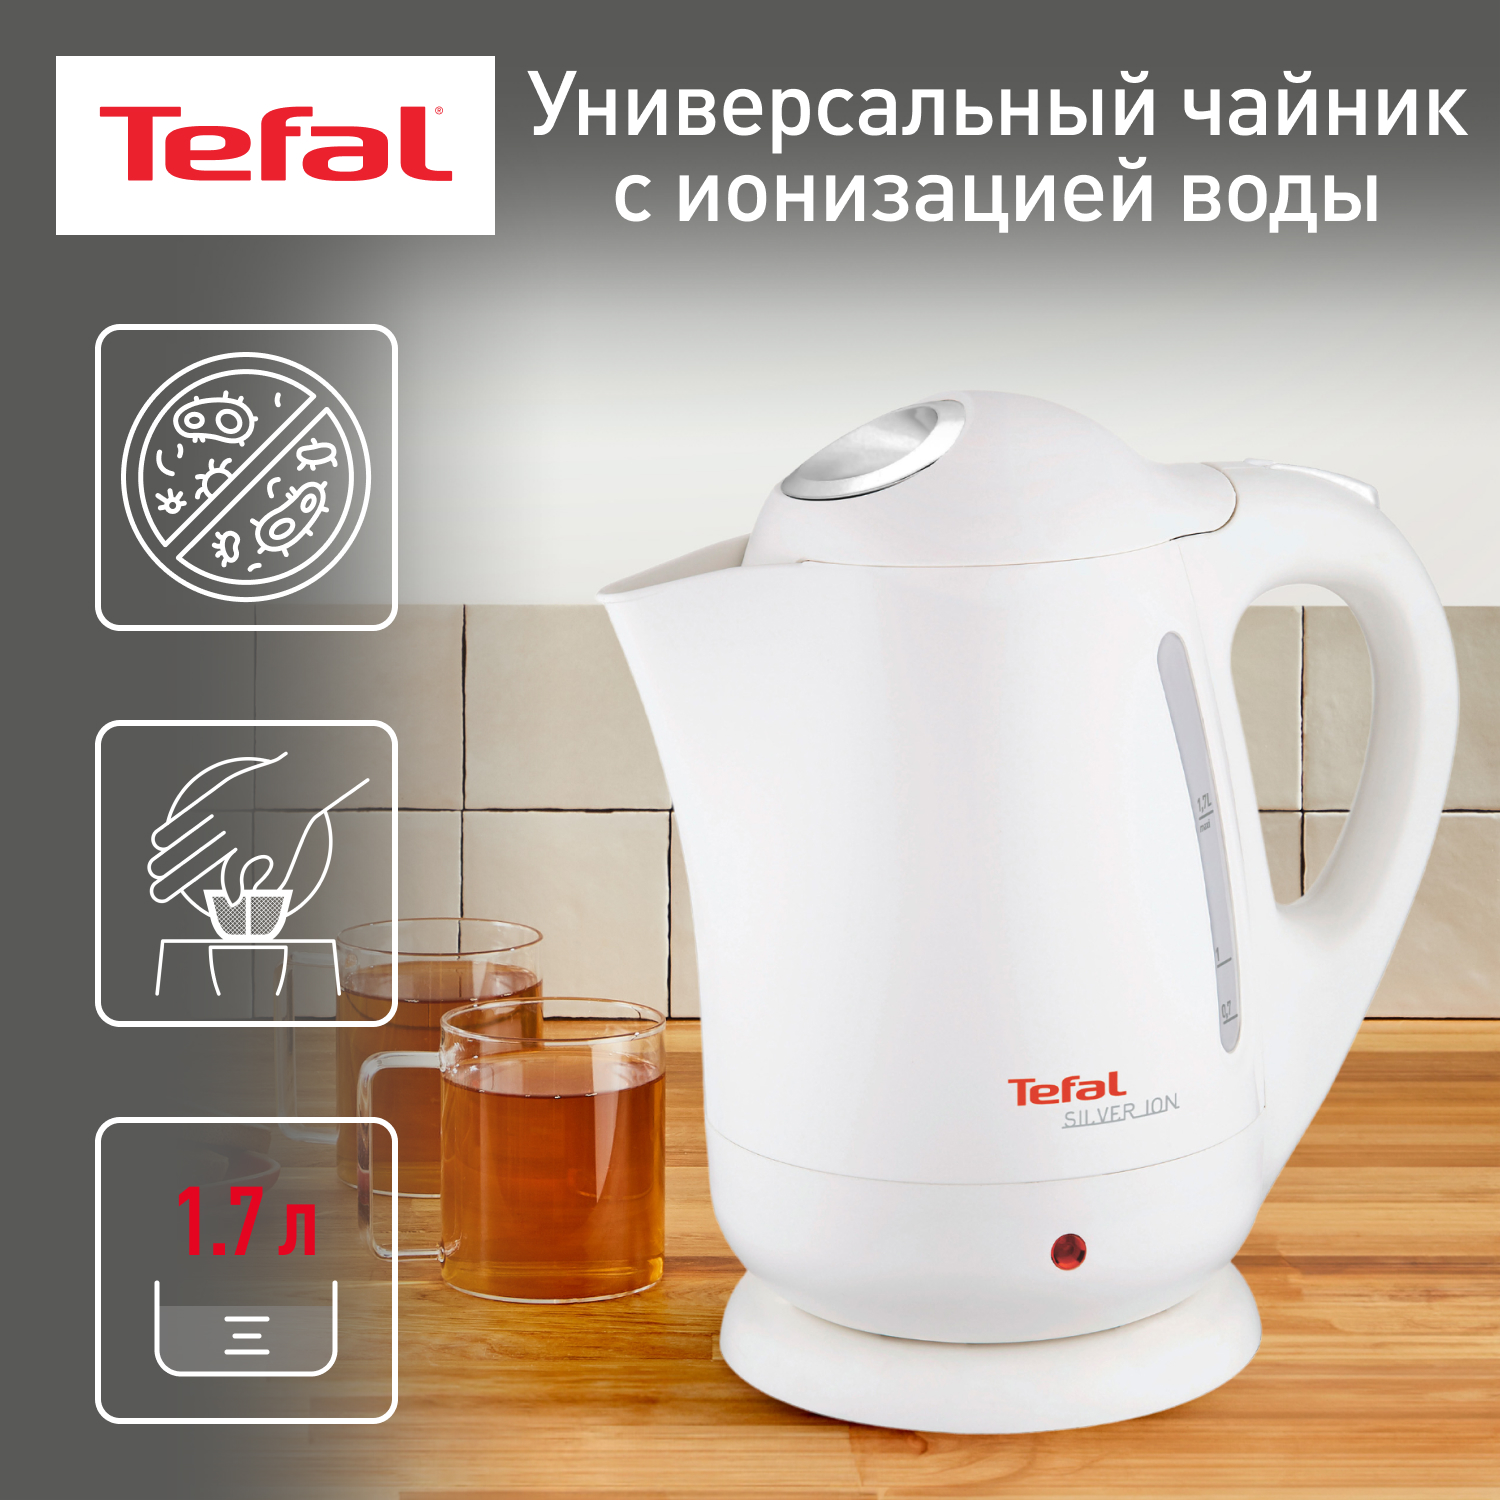 Электрический чайник Tefal Silver Ion BF925132, купить в Москве, цены в интернет-магазинах на Мегамаркет